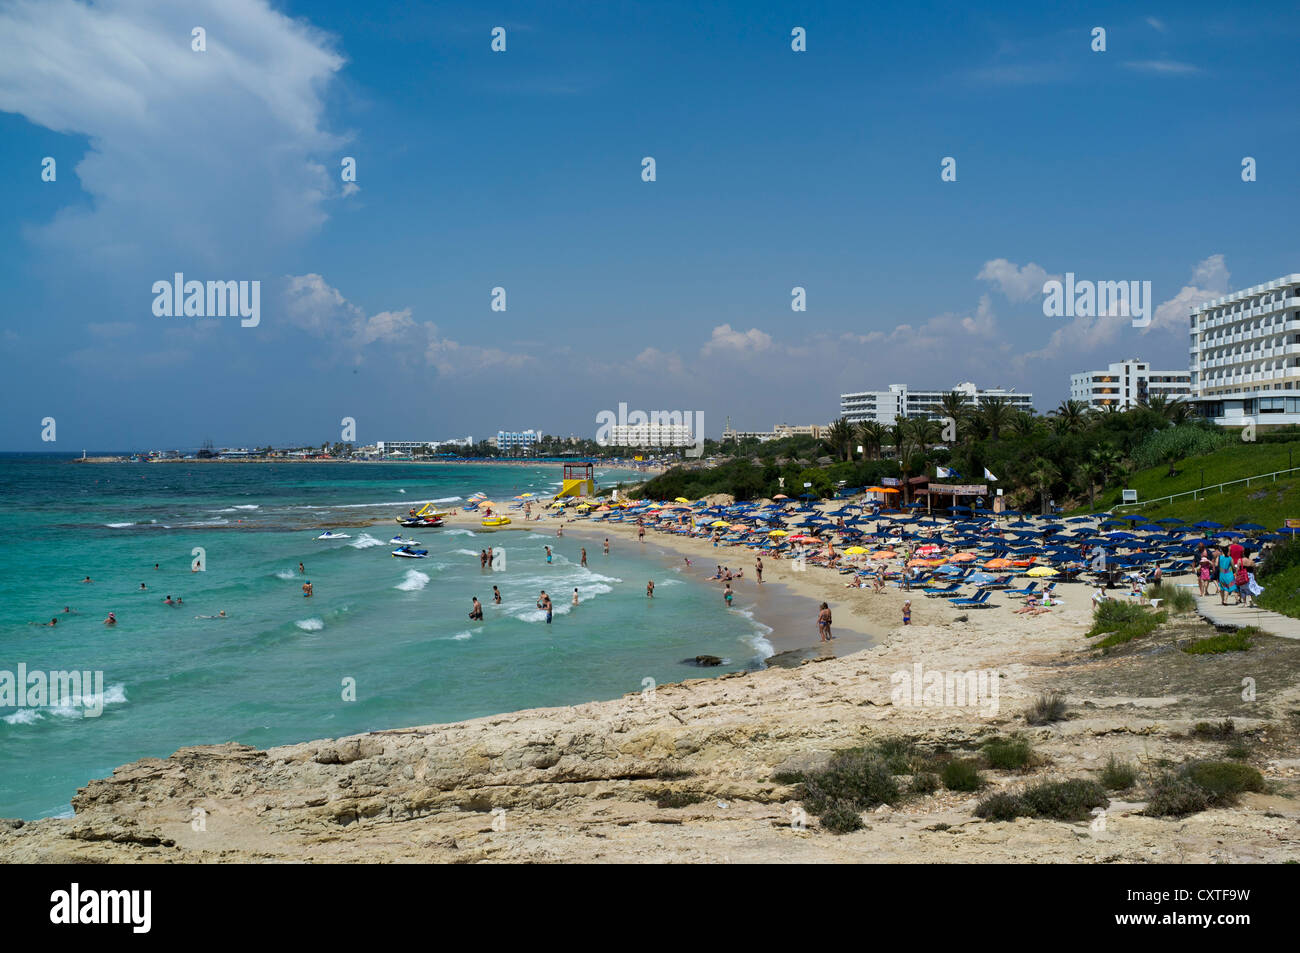 dh AYIA NAPA CIPRO SUD bagnanti spiaggia sabbiosa costa e resort vacanze alberghi baia agia spiagge Foto Stock